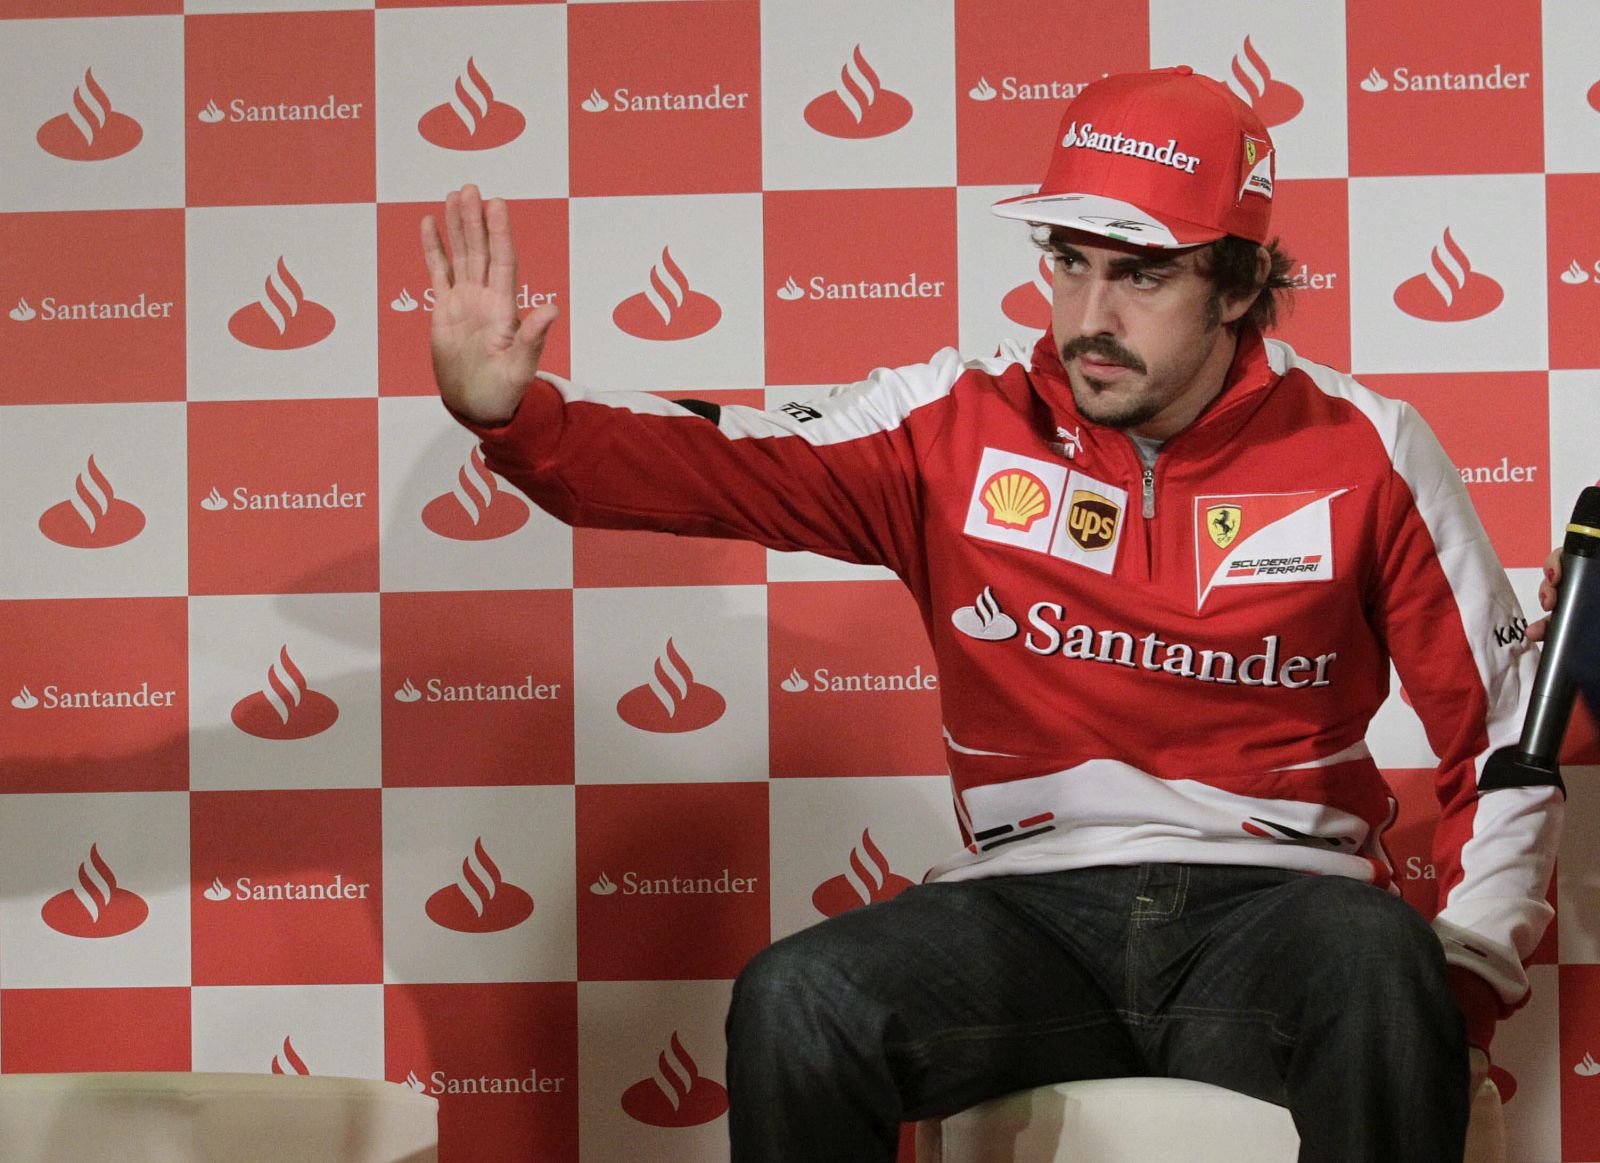 Imagen del bicampeón mundial de Fórmula Uno, Fernando Alonso, durante la rueda de prensa.